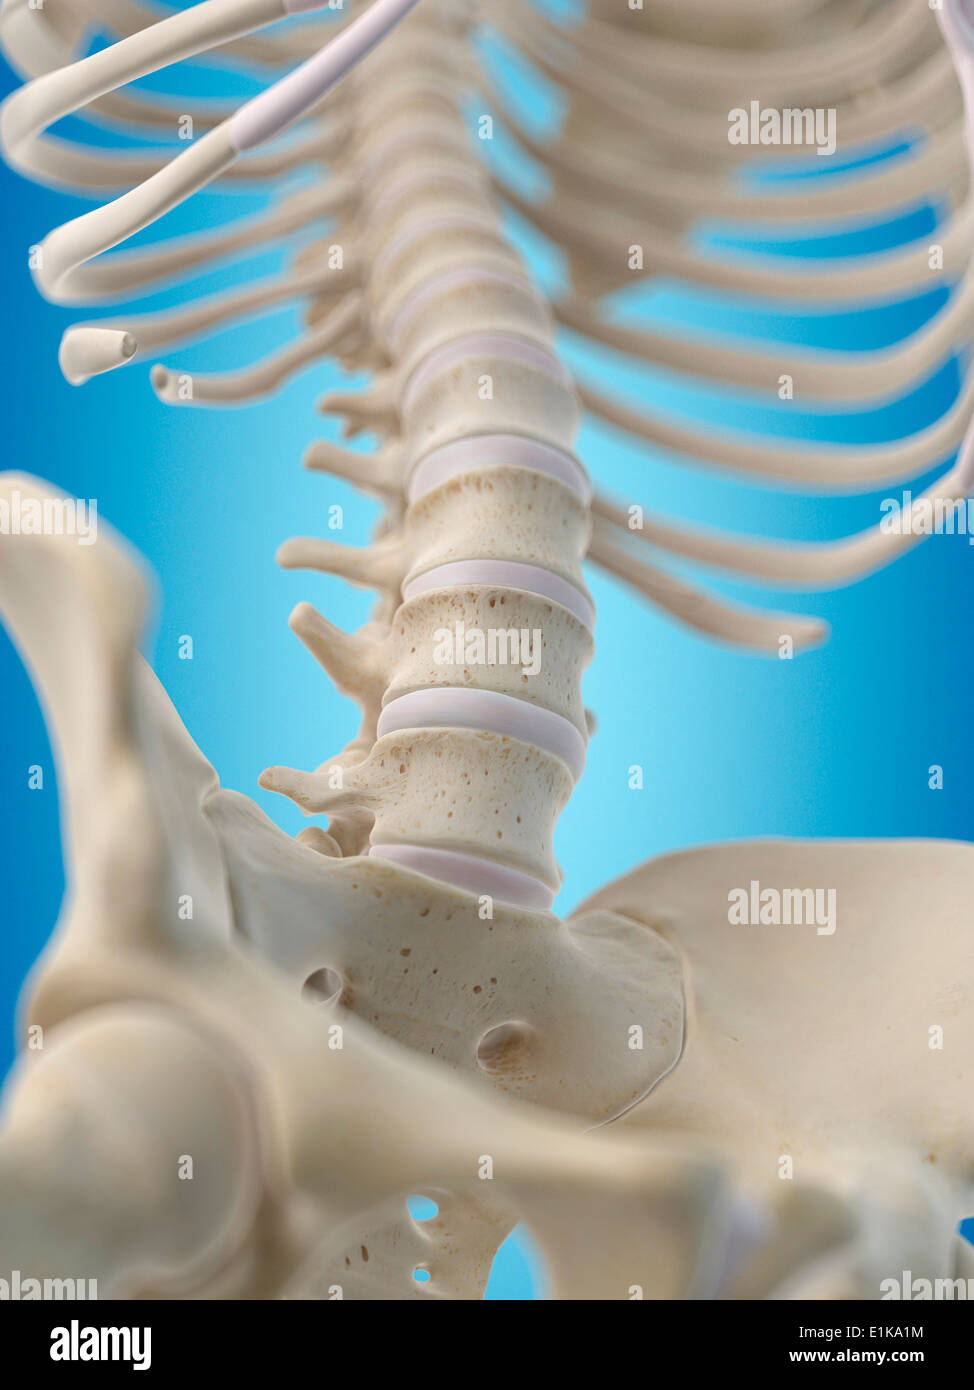 Human lumbar bones computer artwork. Stock Photo